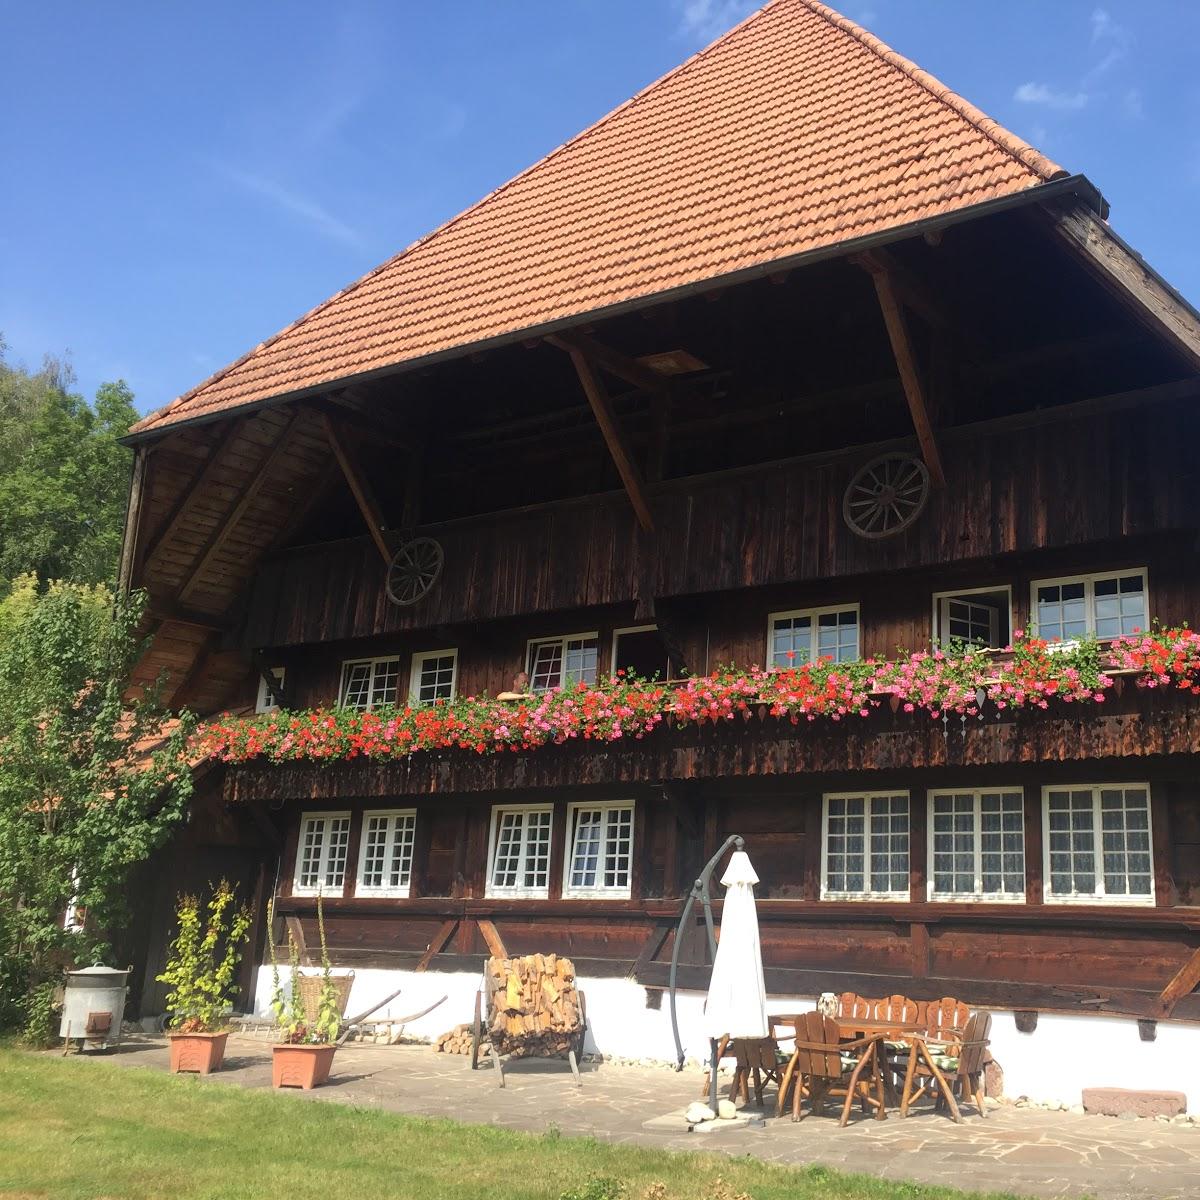 Restaurant "Rommelehof" in Gutach (Schwarzwaldbahn)